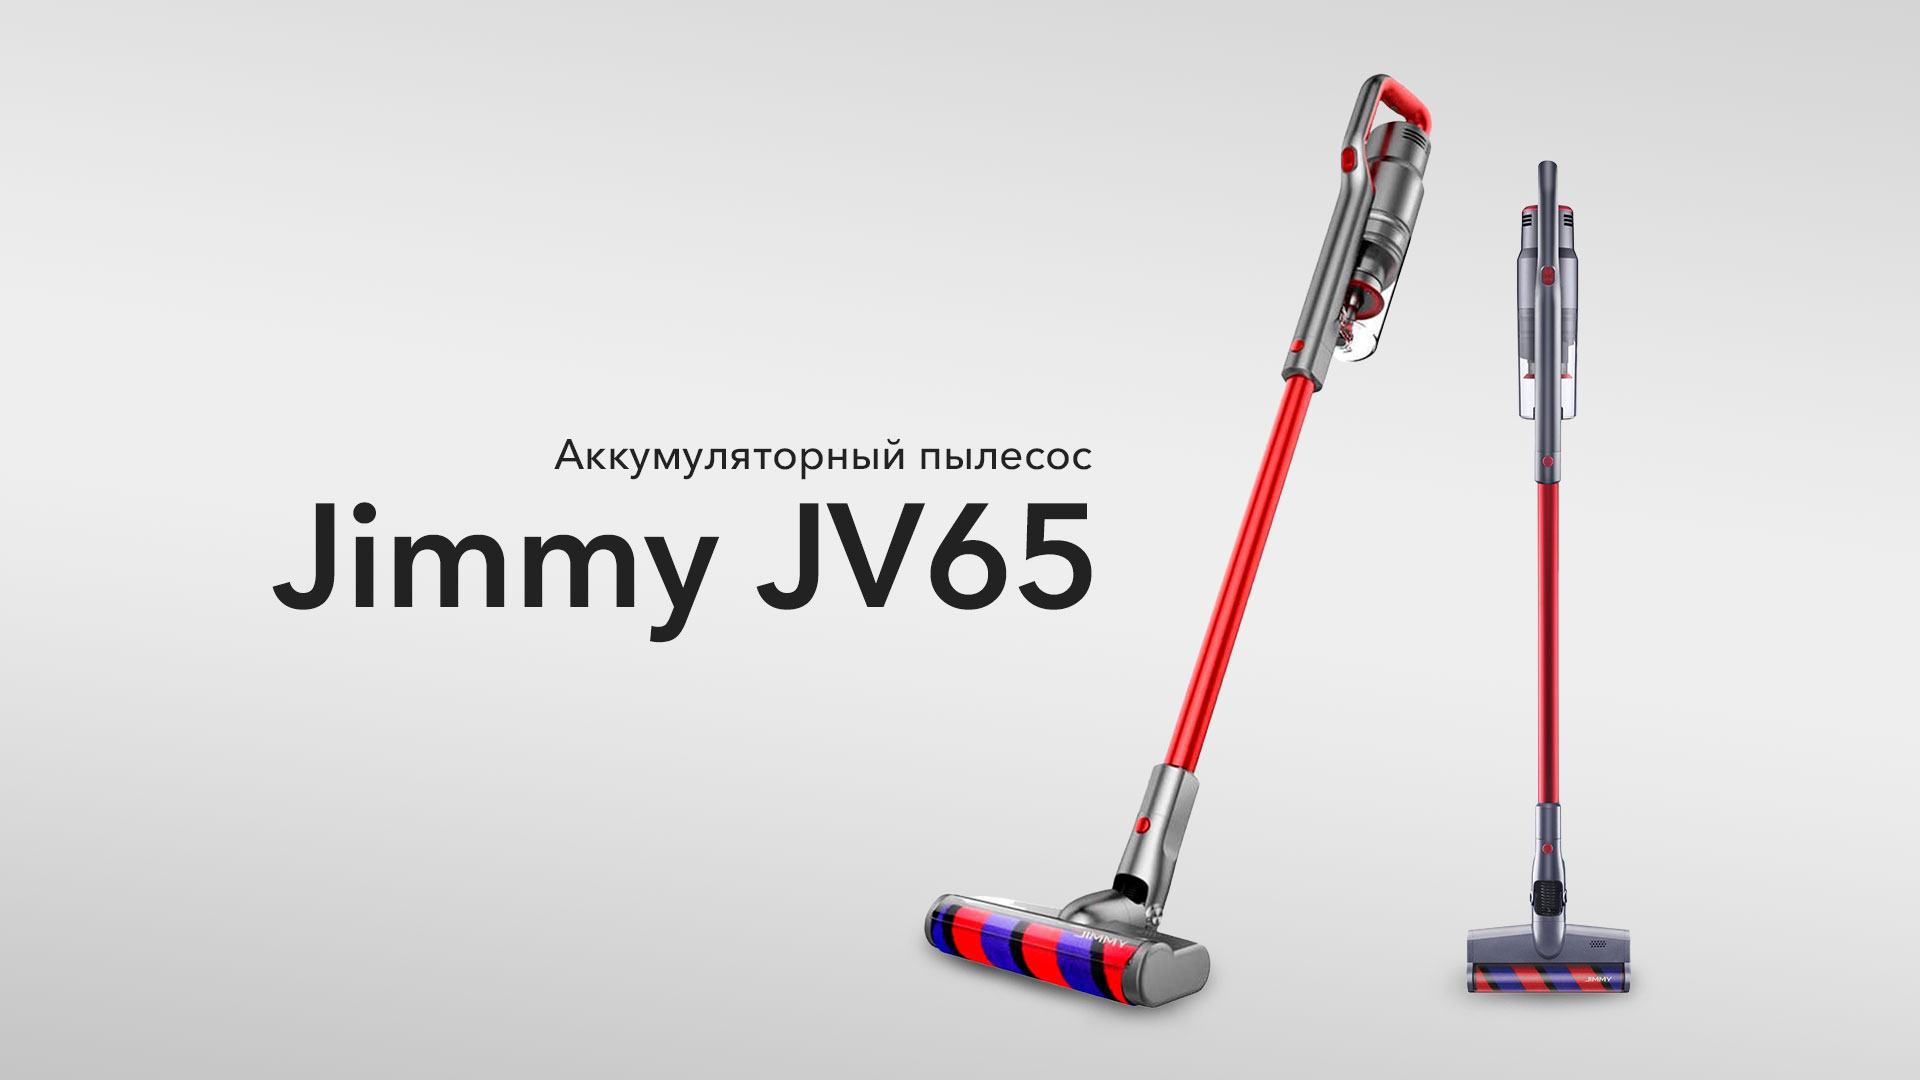 Мощный аккумуляторный пылесос Xiaomi Jimmy JV65 с широкой комплектацией!